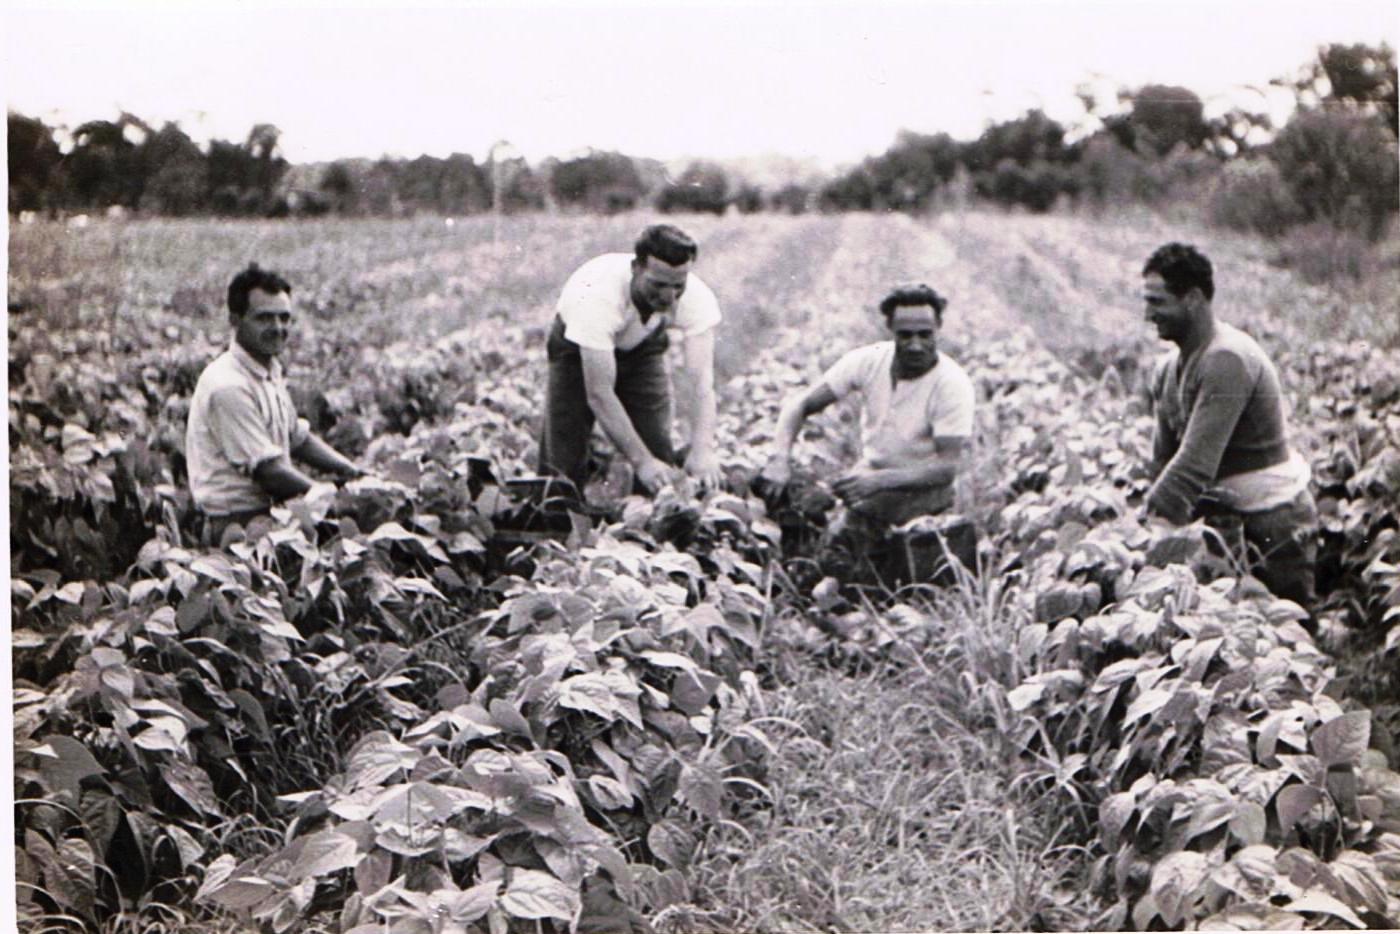 Worker's in a kitchen garden field, Rossmore, circa 1960